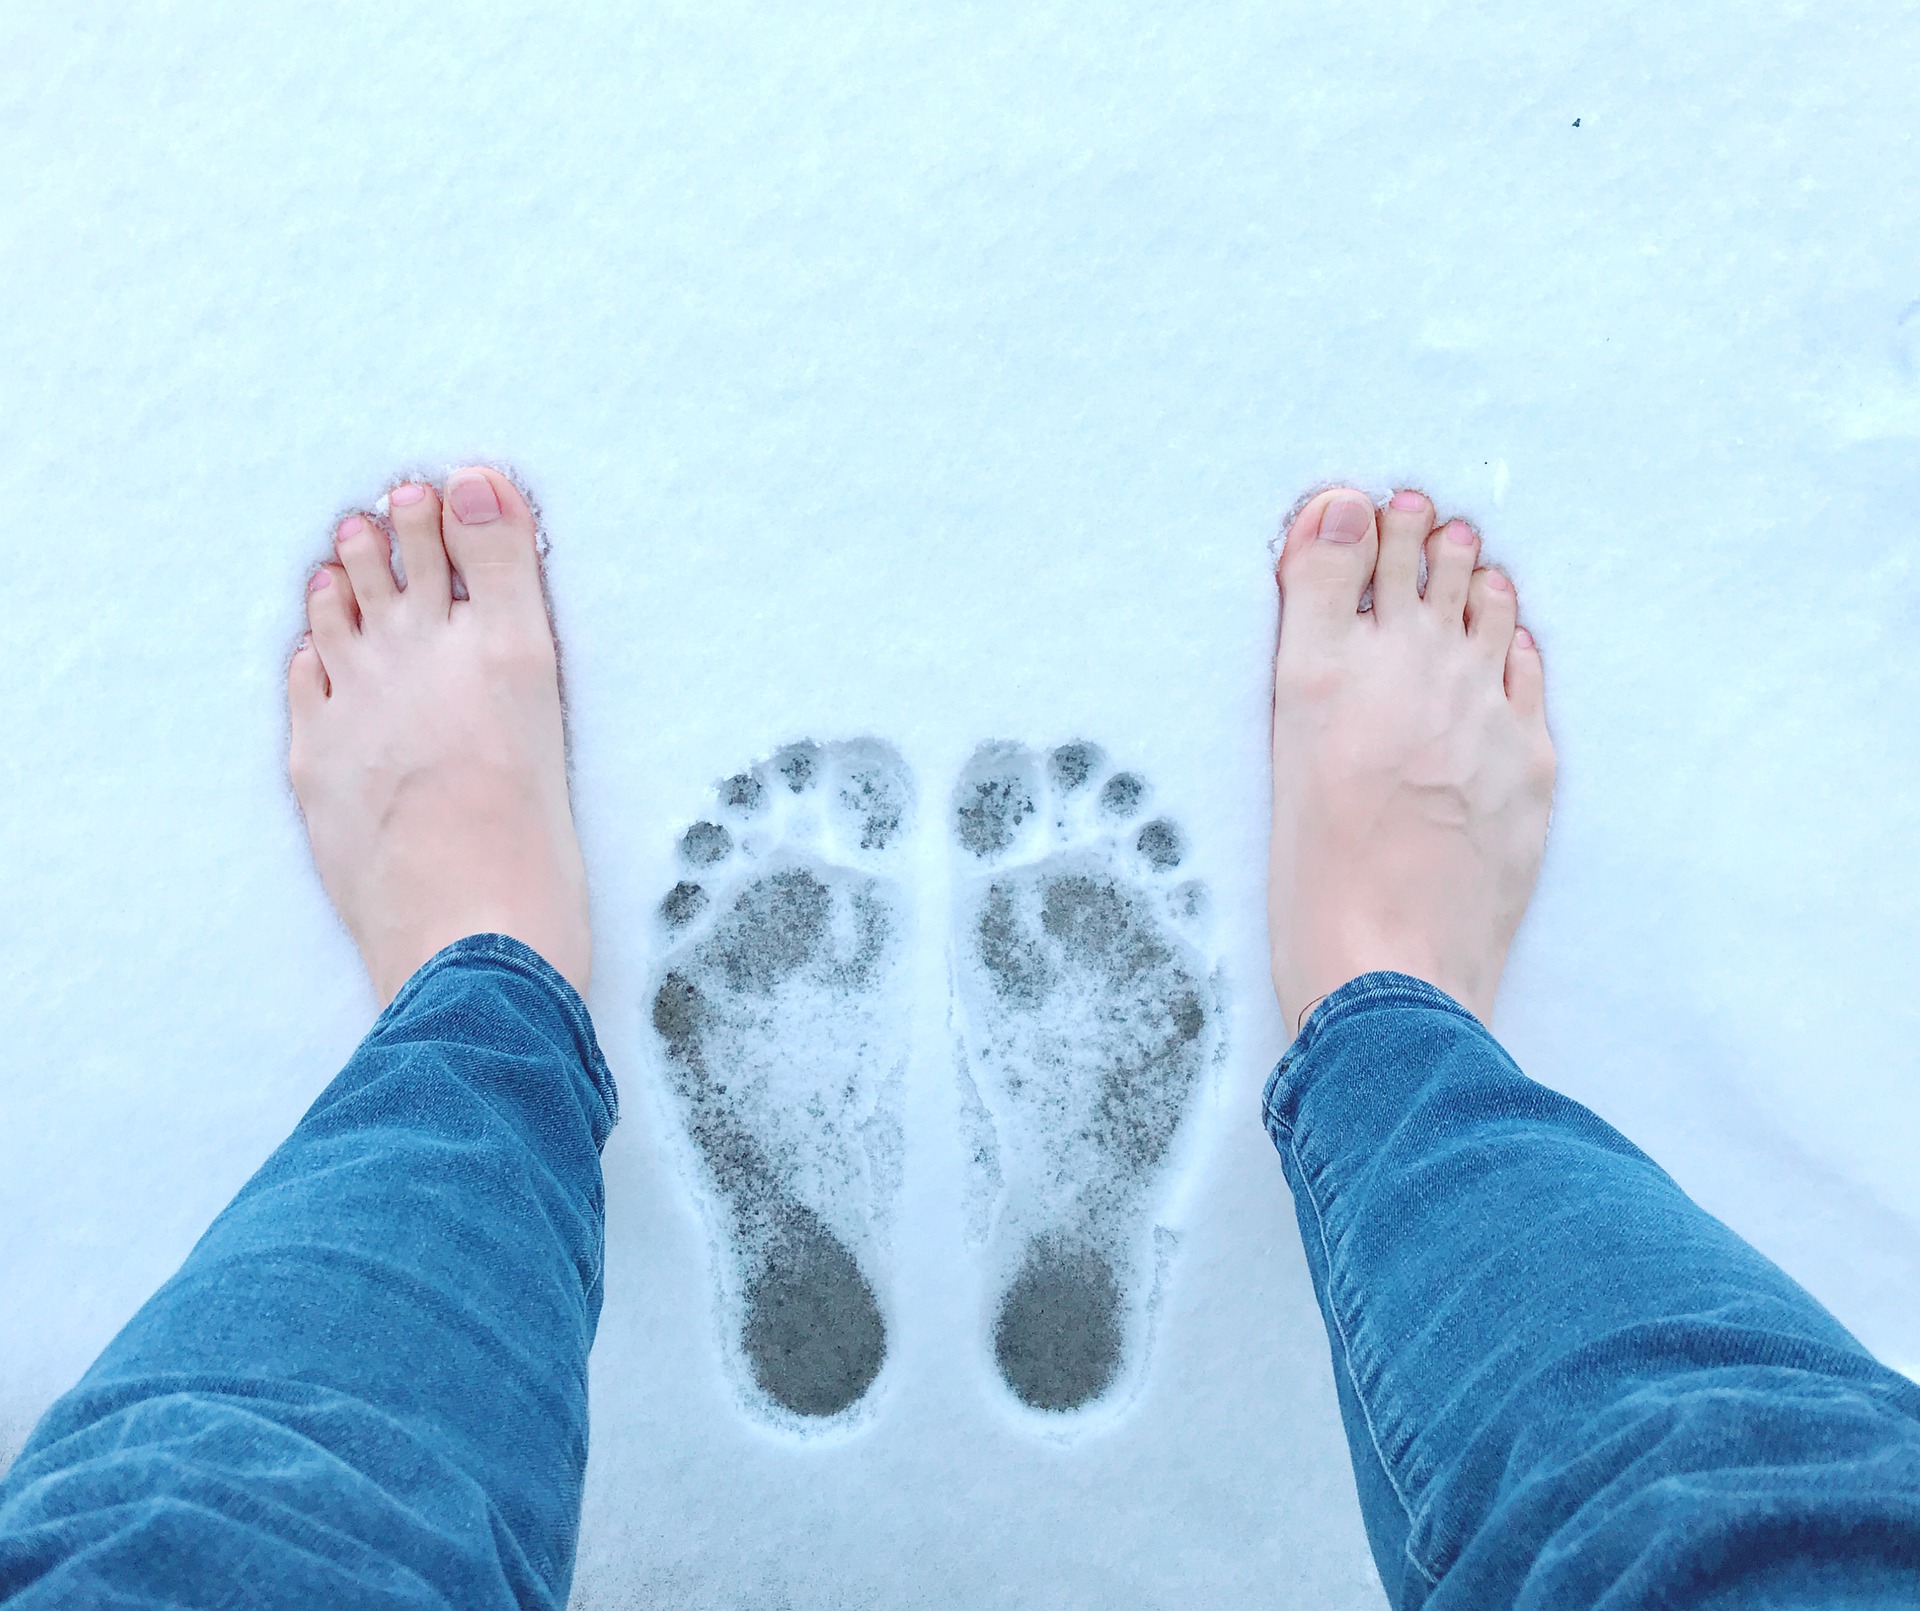 Вечером холодные ноги. Ноги в снегу. Босые ноги на снегу. Женские ноги на снегу. Ступни на снегу.